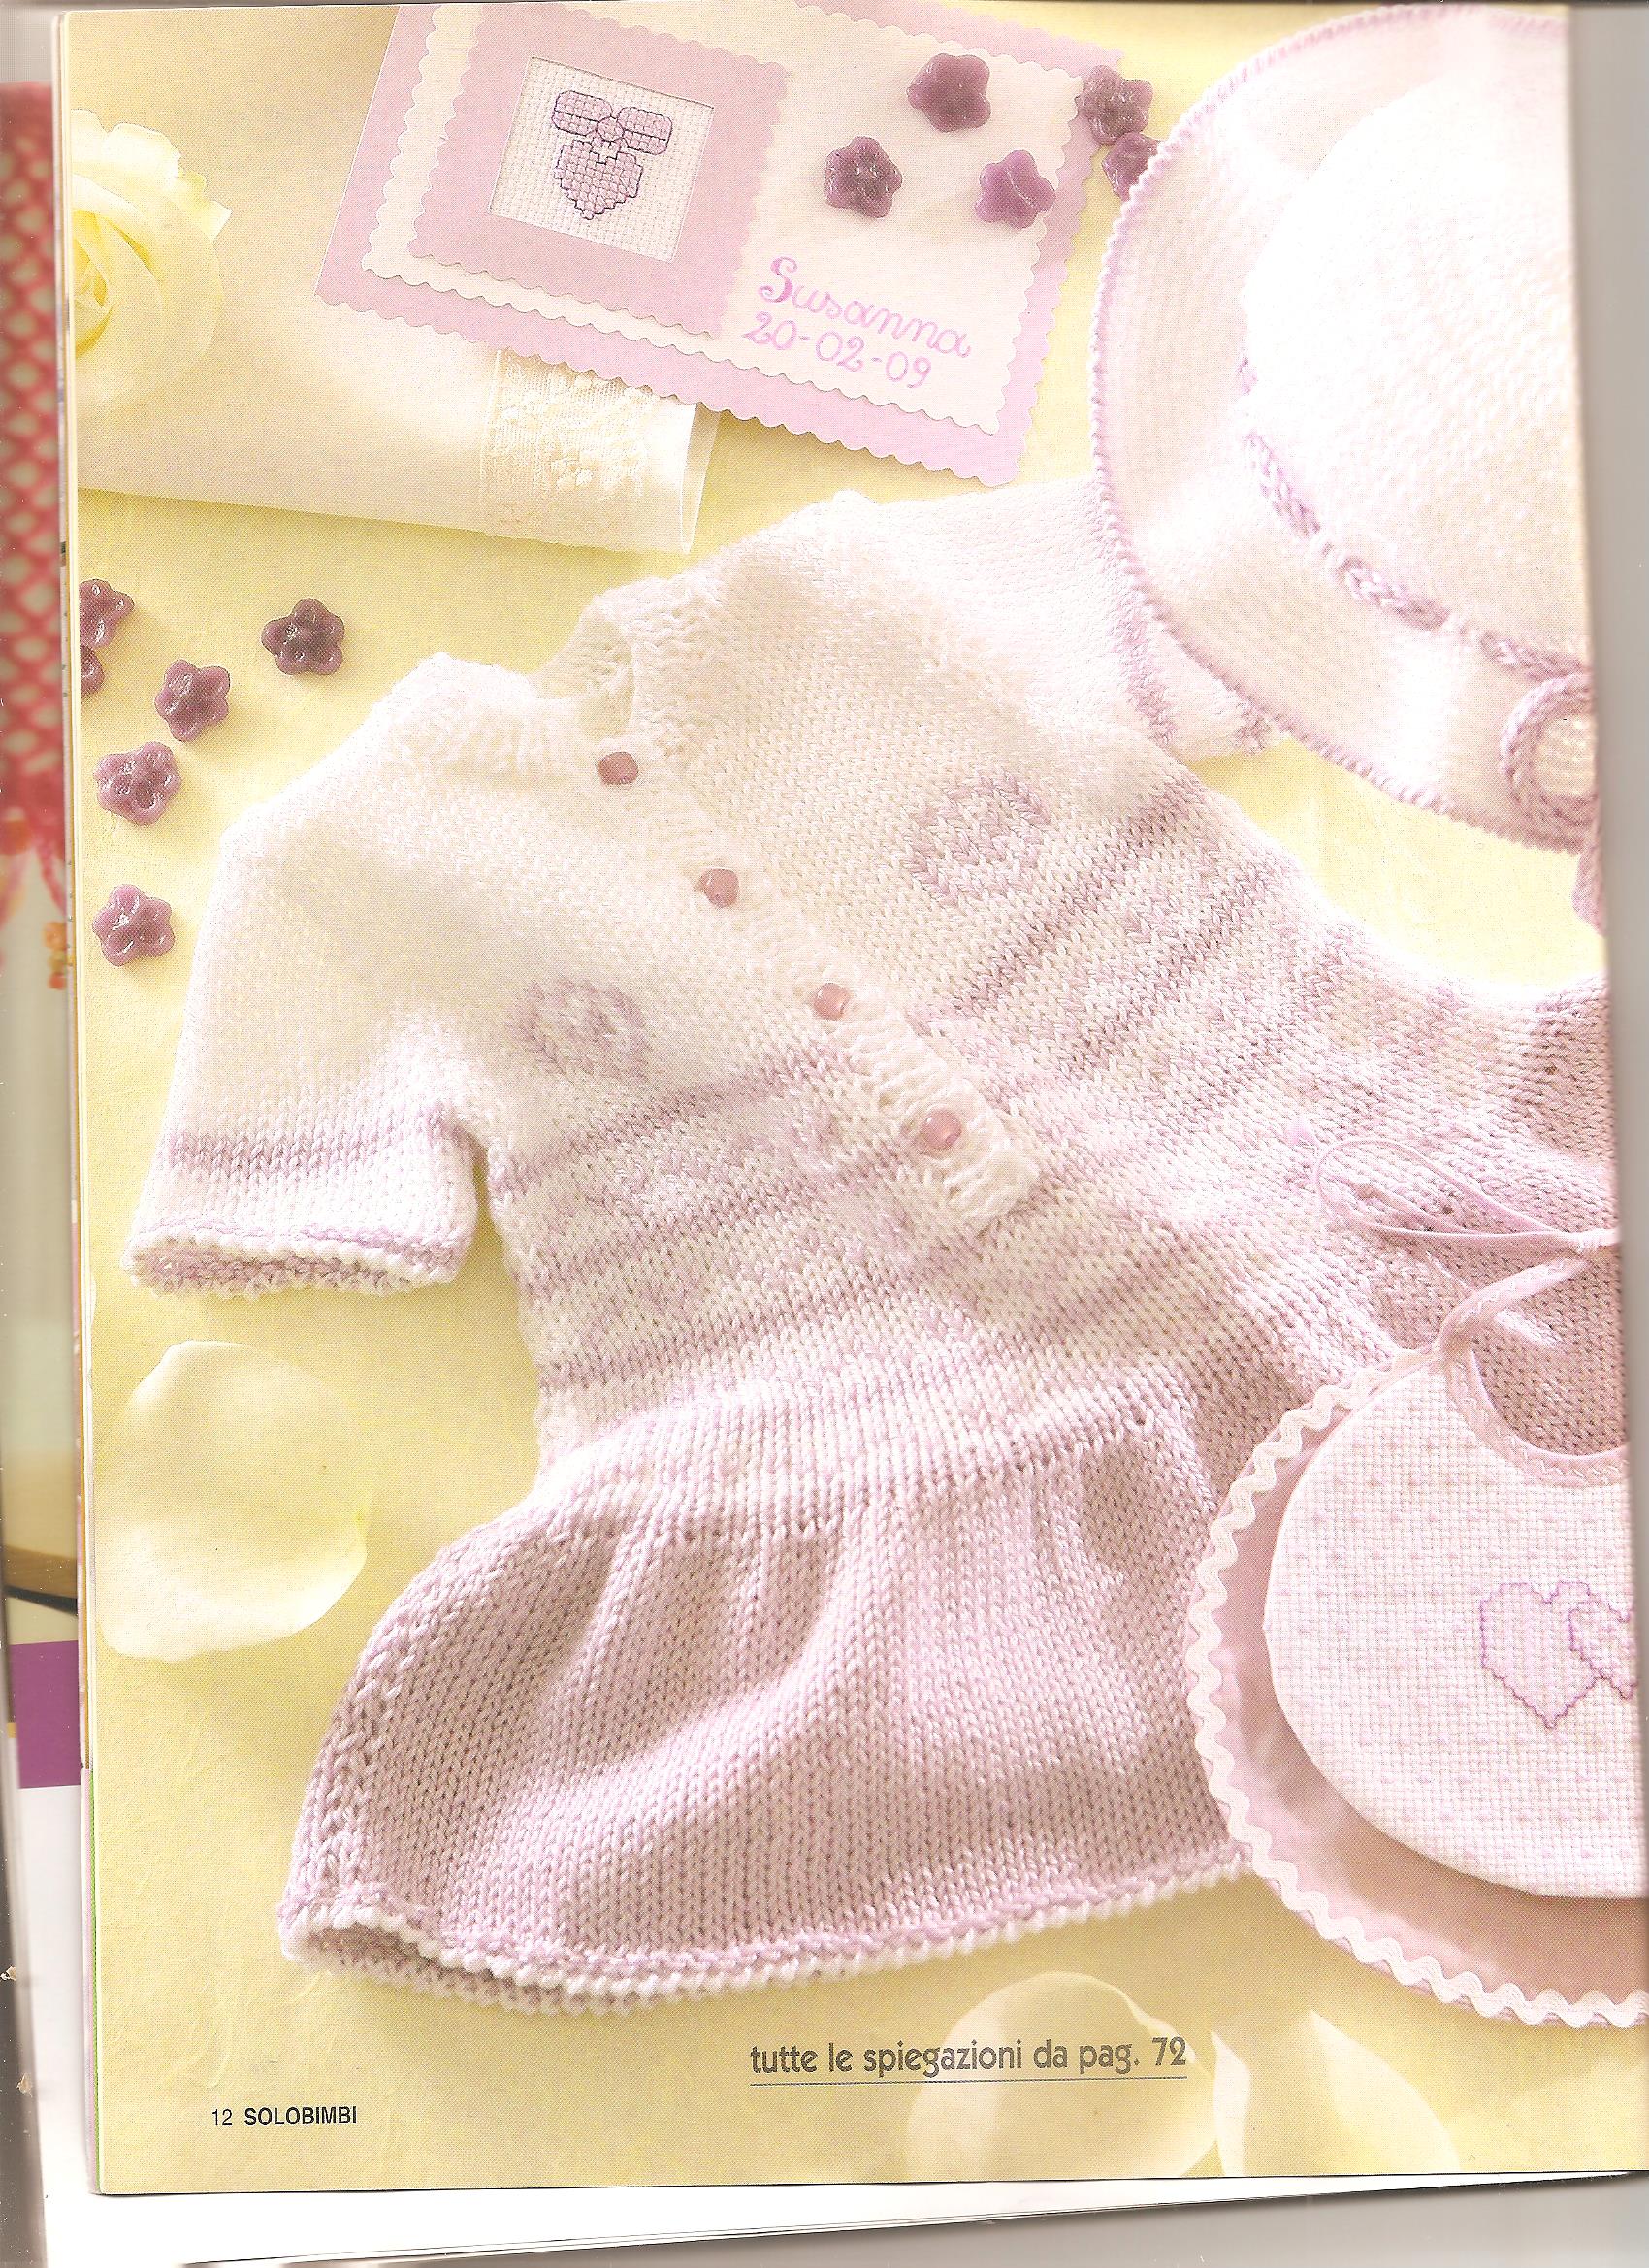 Little dress for baby-girl knitting pattern (1)